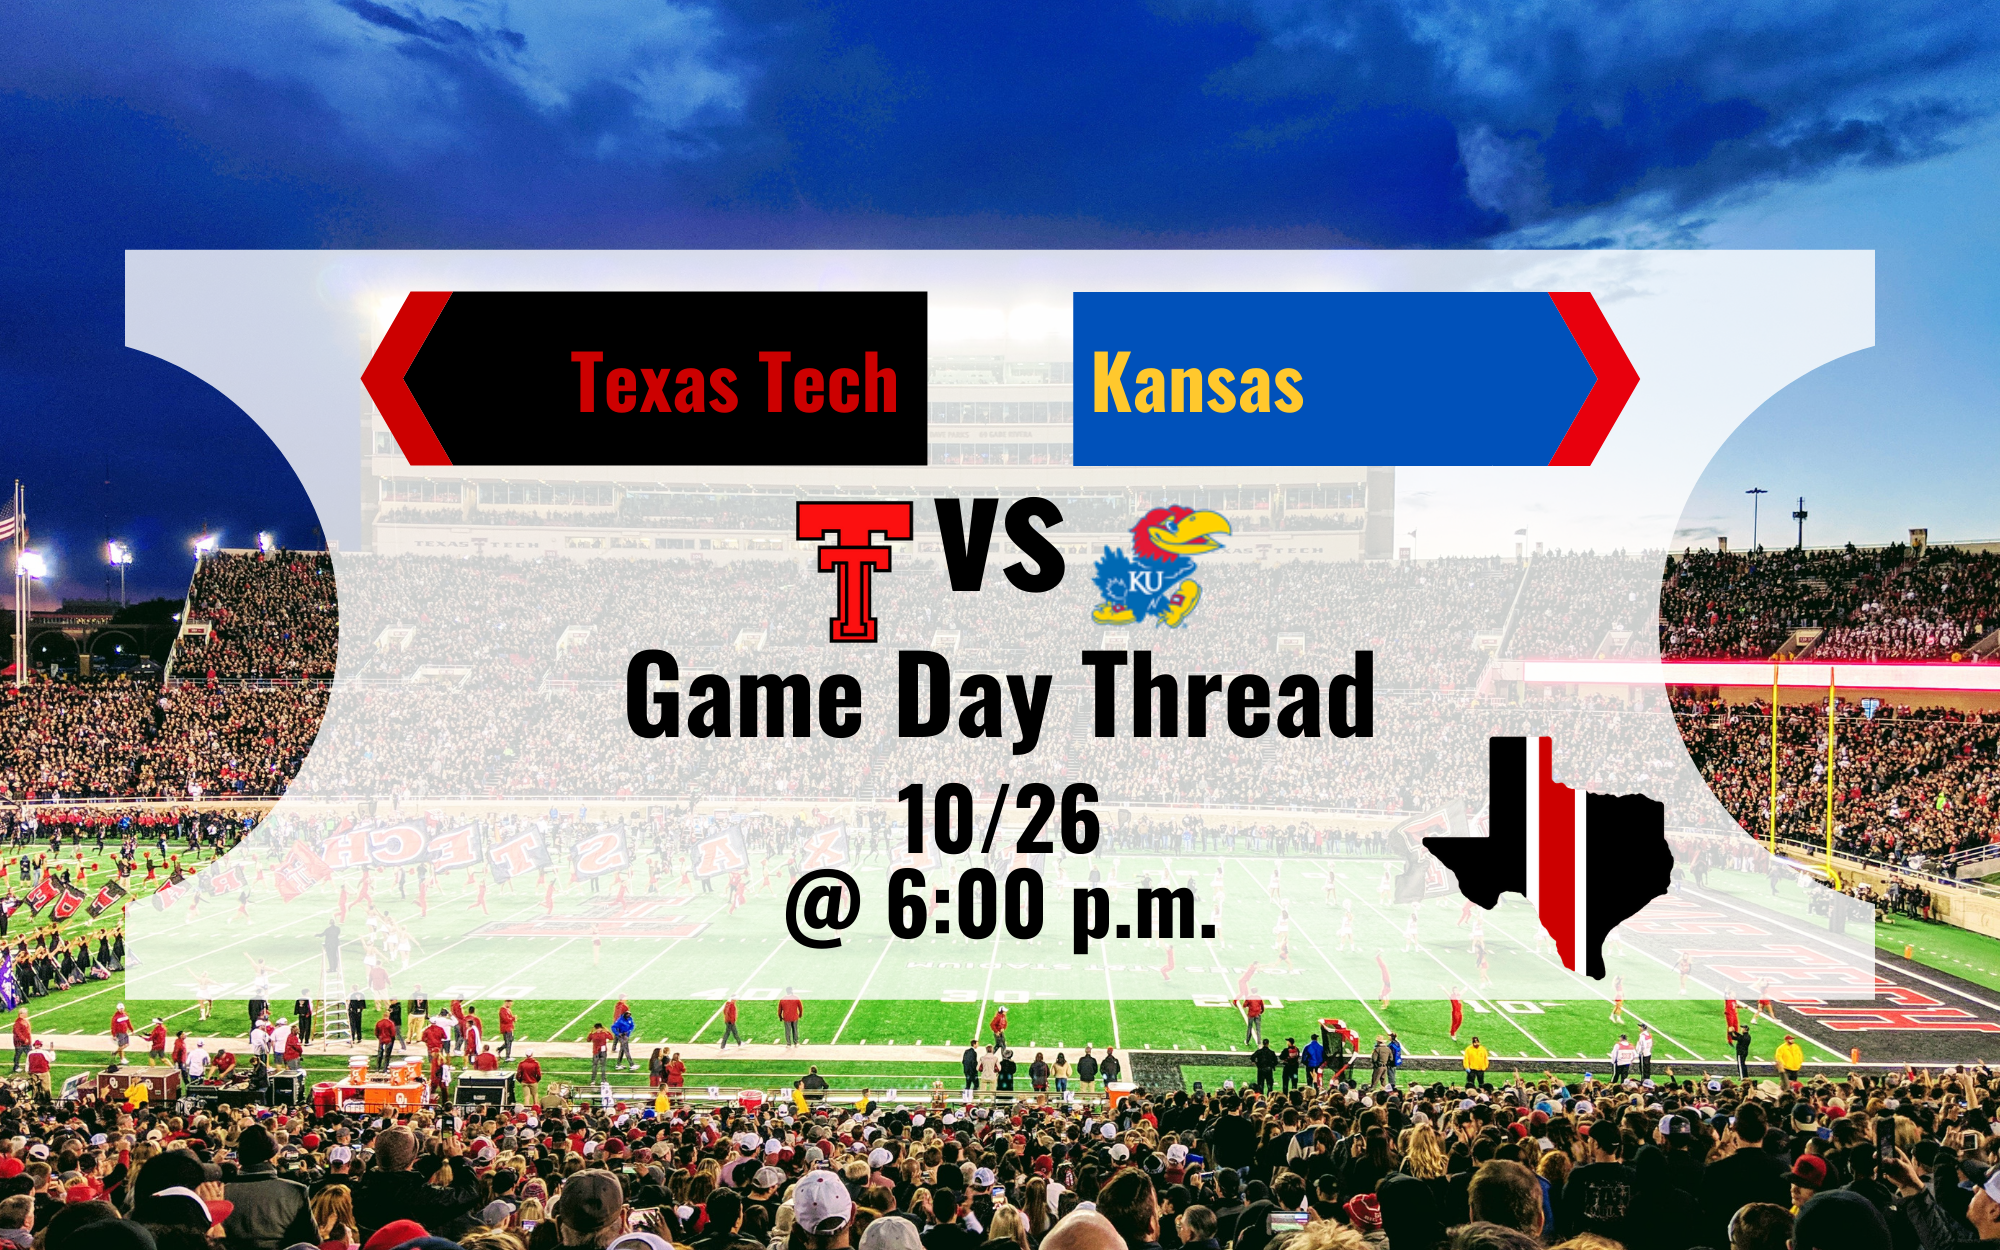 Game Day Thread 1: Texas Tech vs. Kansas